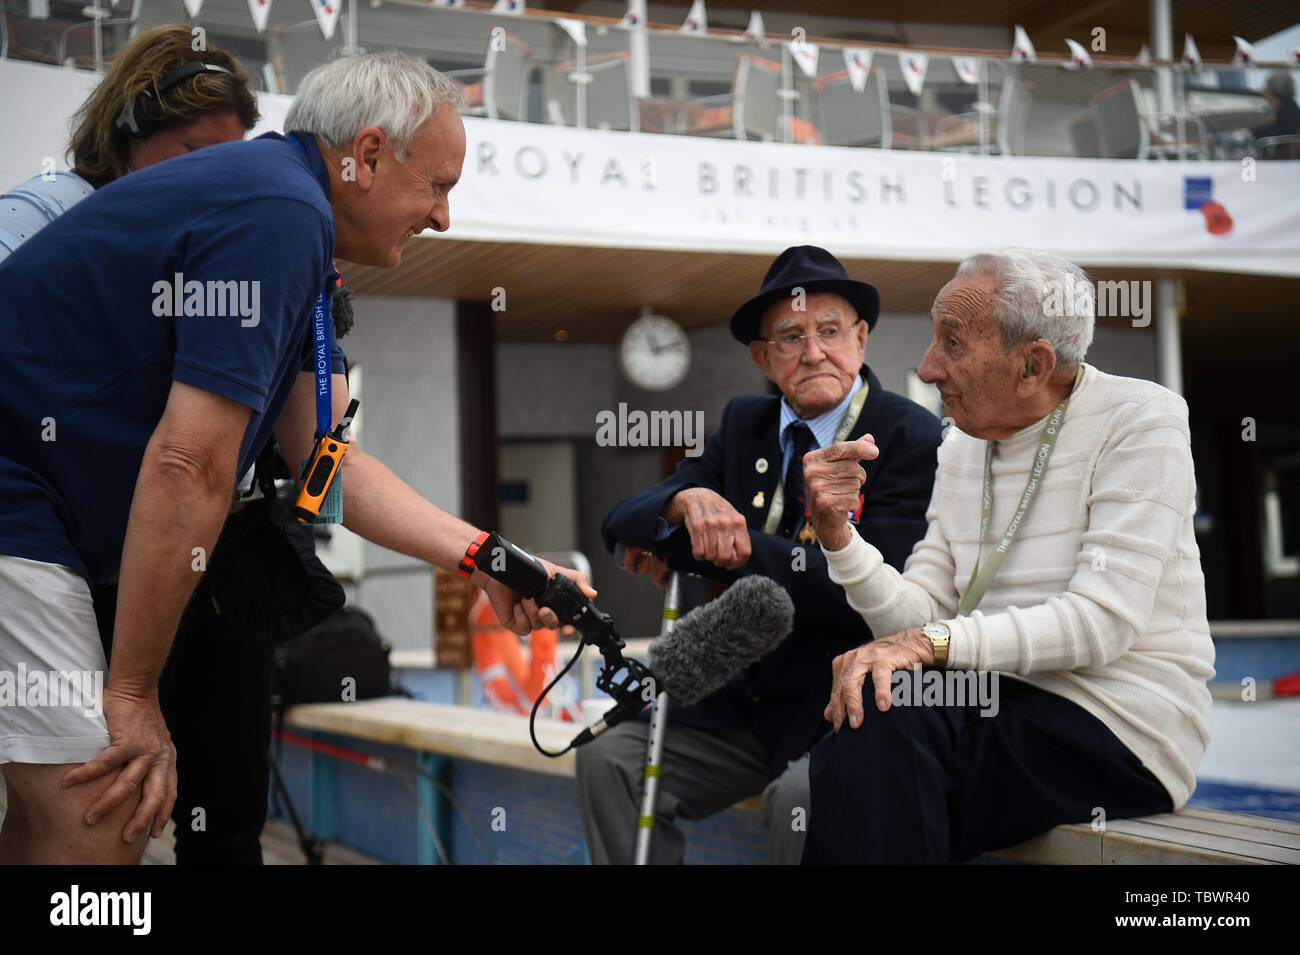 Veteranen werden von Medien, die auf dem Deck des MV Bouddica in Dünkirchen, Frankreich interviewt, am zweiten Tag einer Reise, die von der Royal British Legion für D-Day Veteranen arrangiert den 75. Jahrestag des D-Day zu markieren. Stockfoto